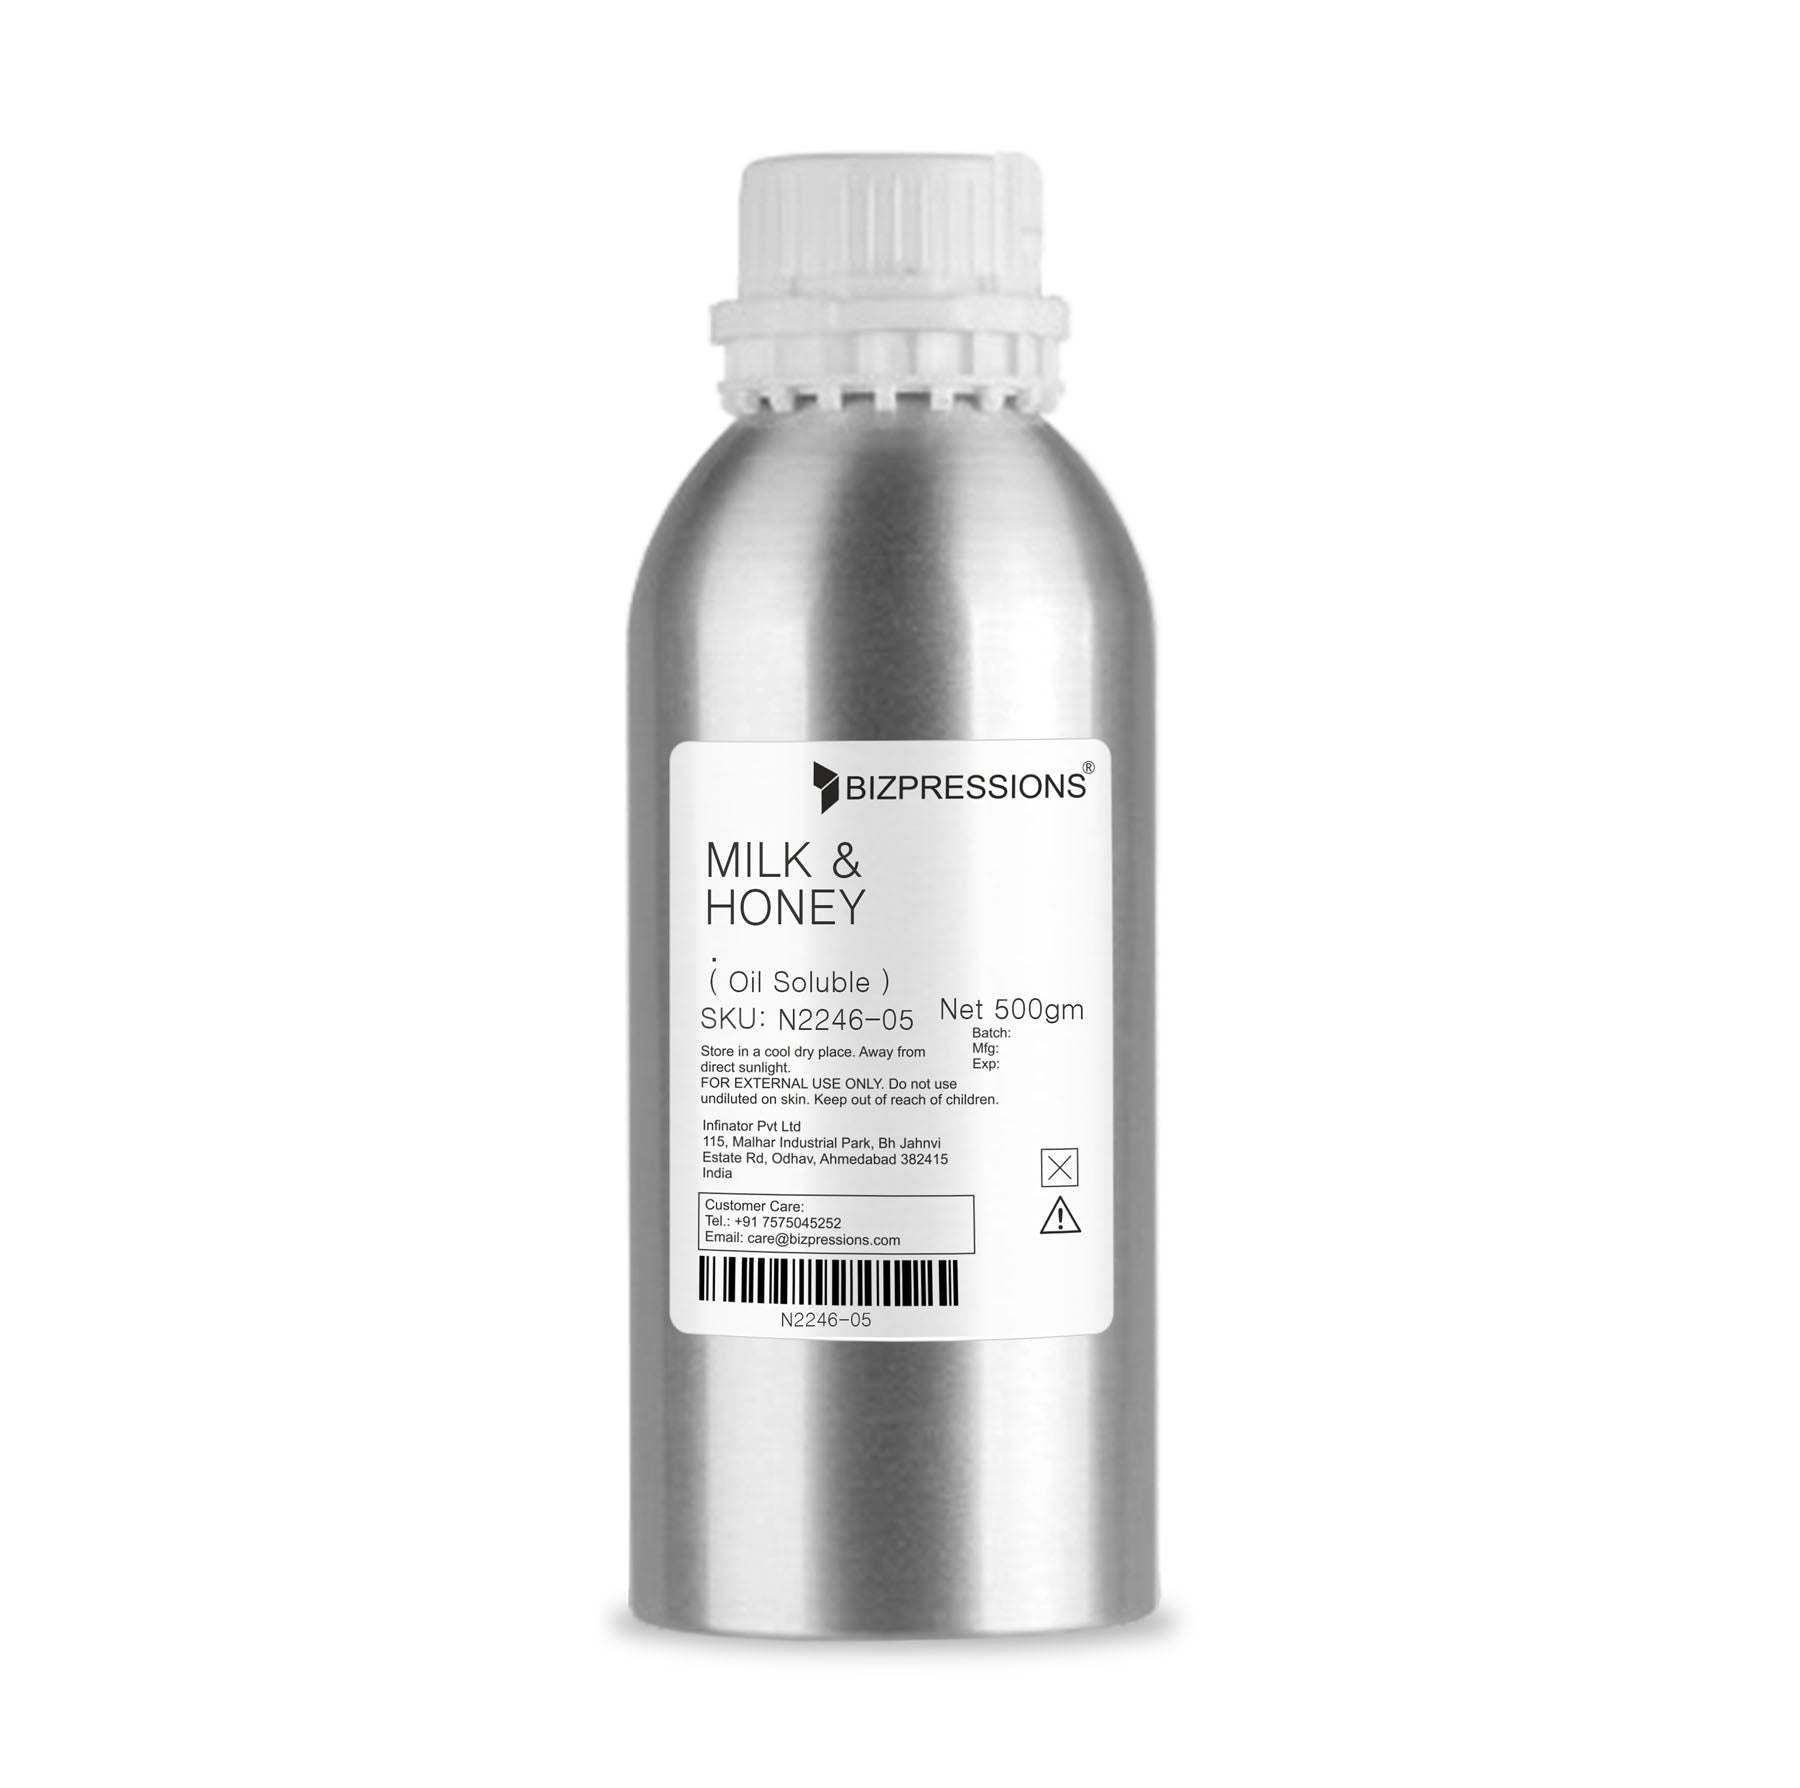 MILK & HONEY - Fragrance ( Oil Soluble ) - 500 gm